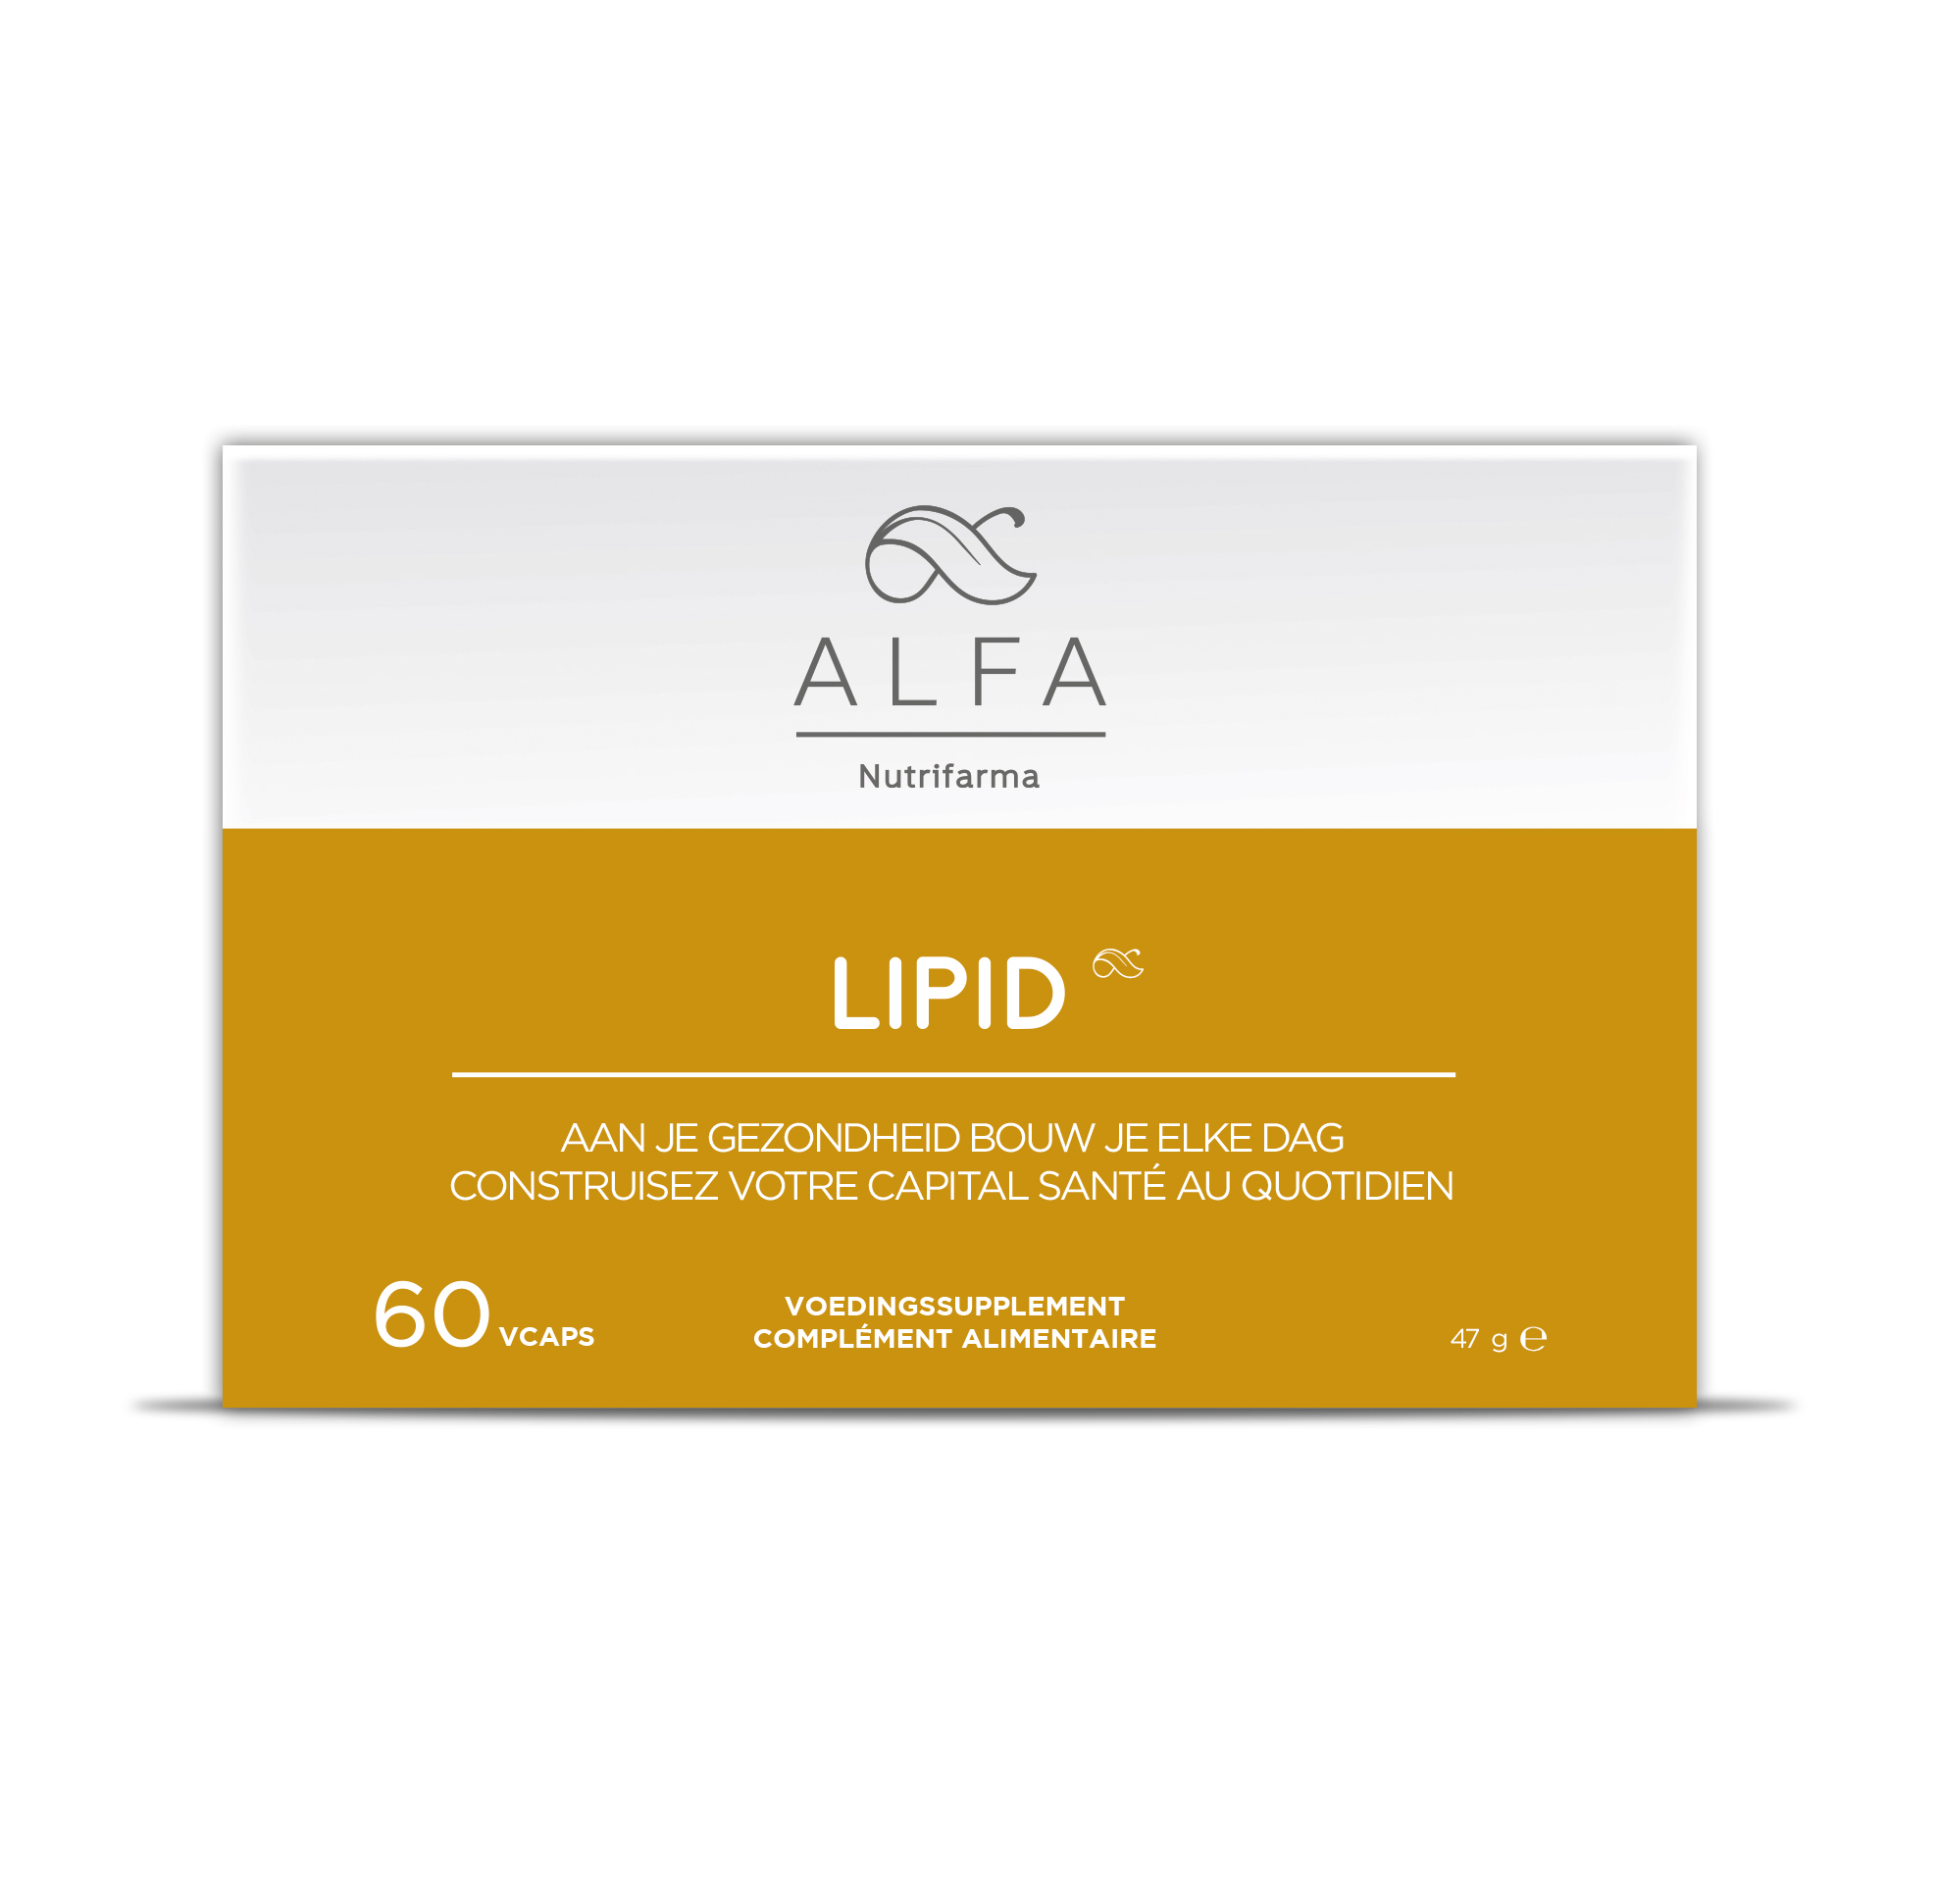 Lipid - 60 vcaps